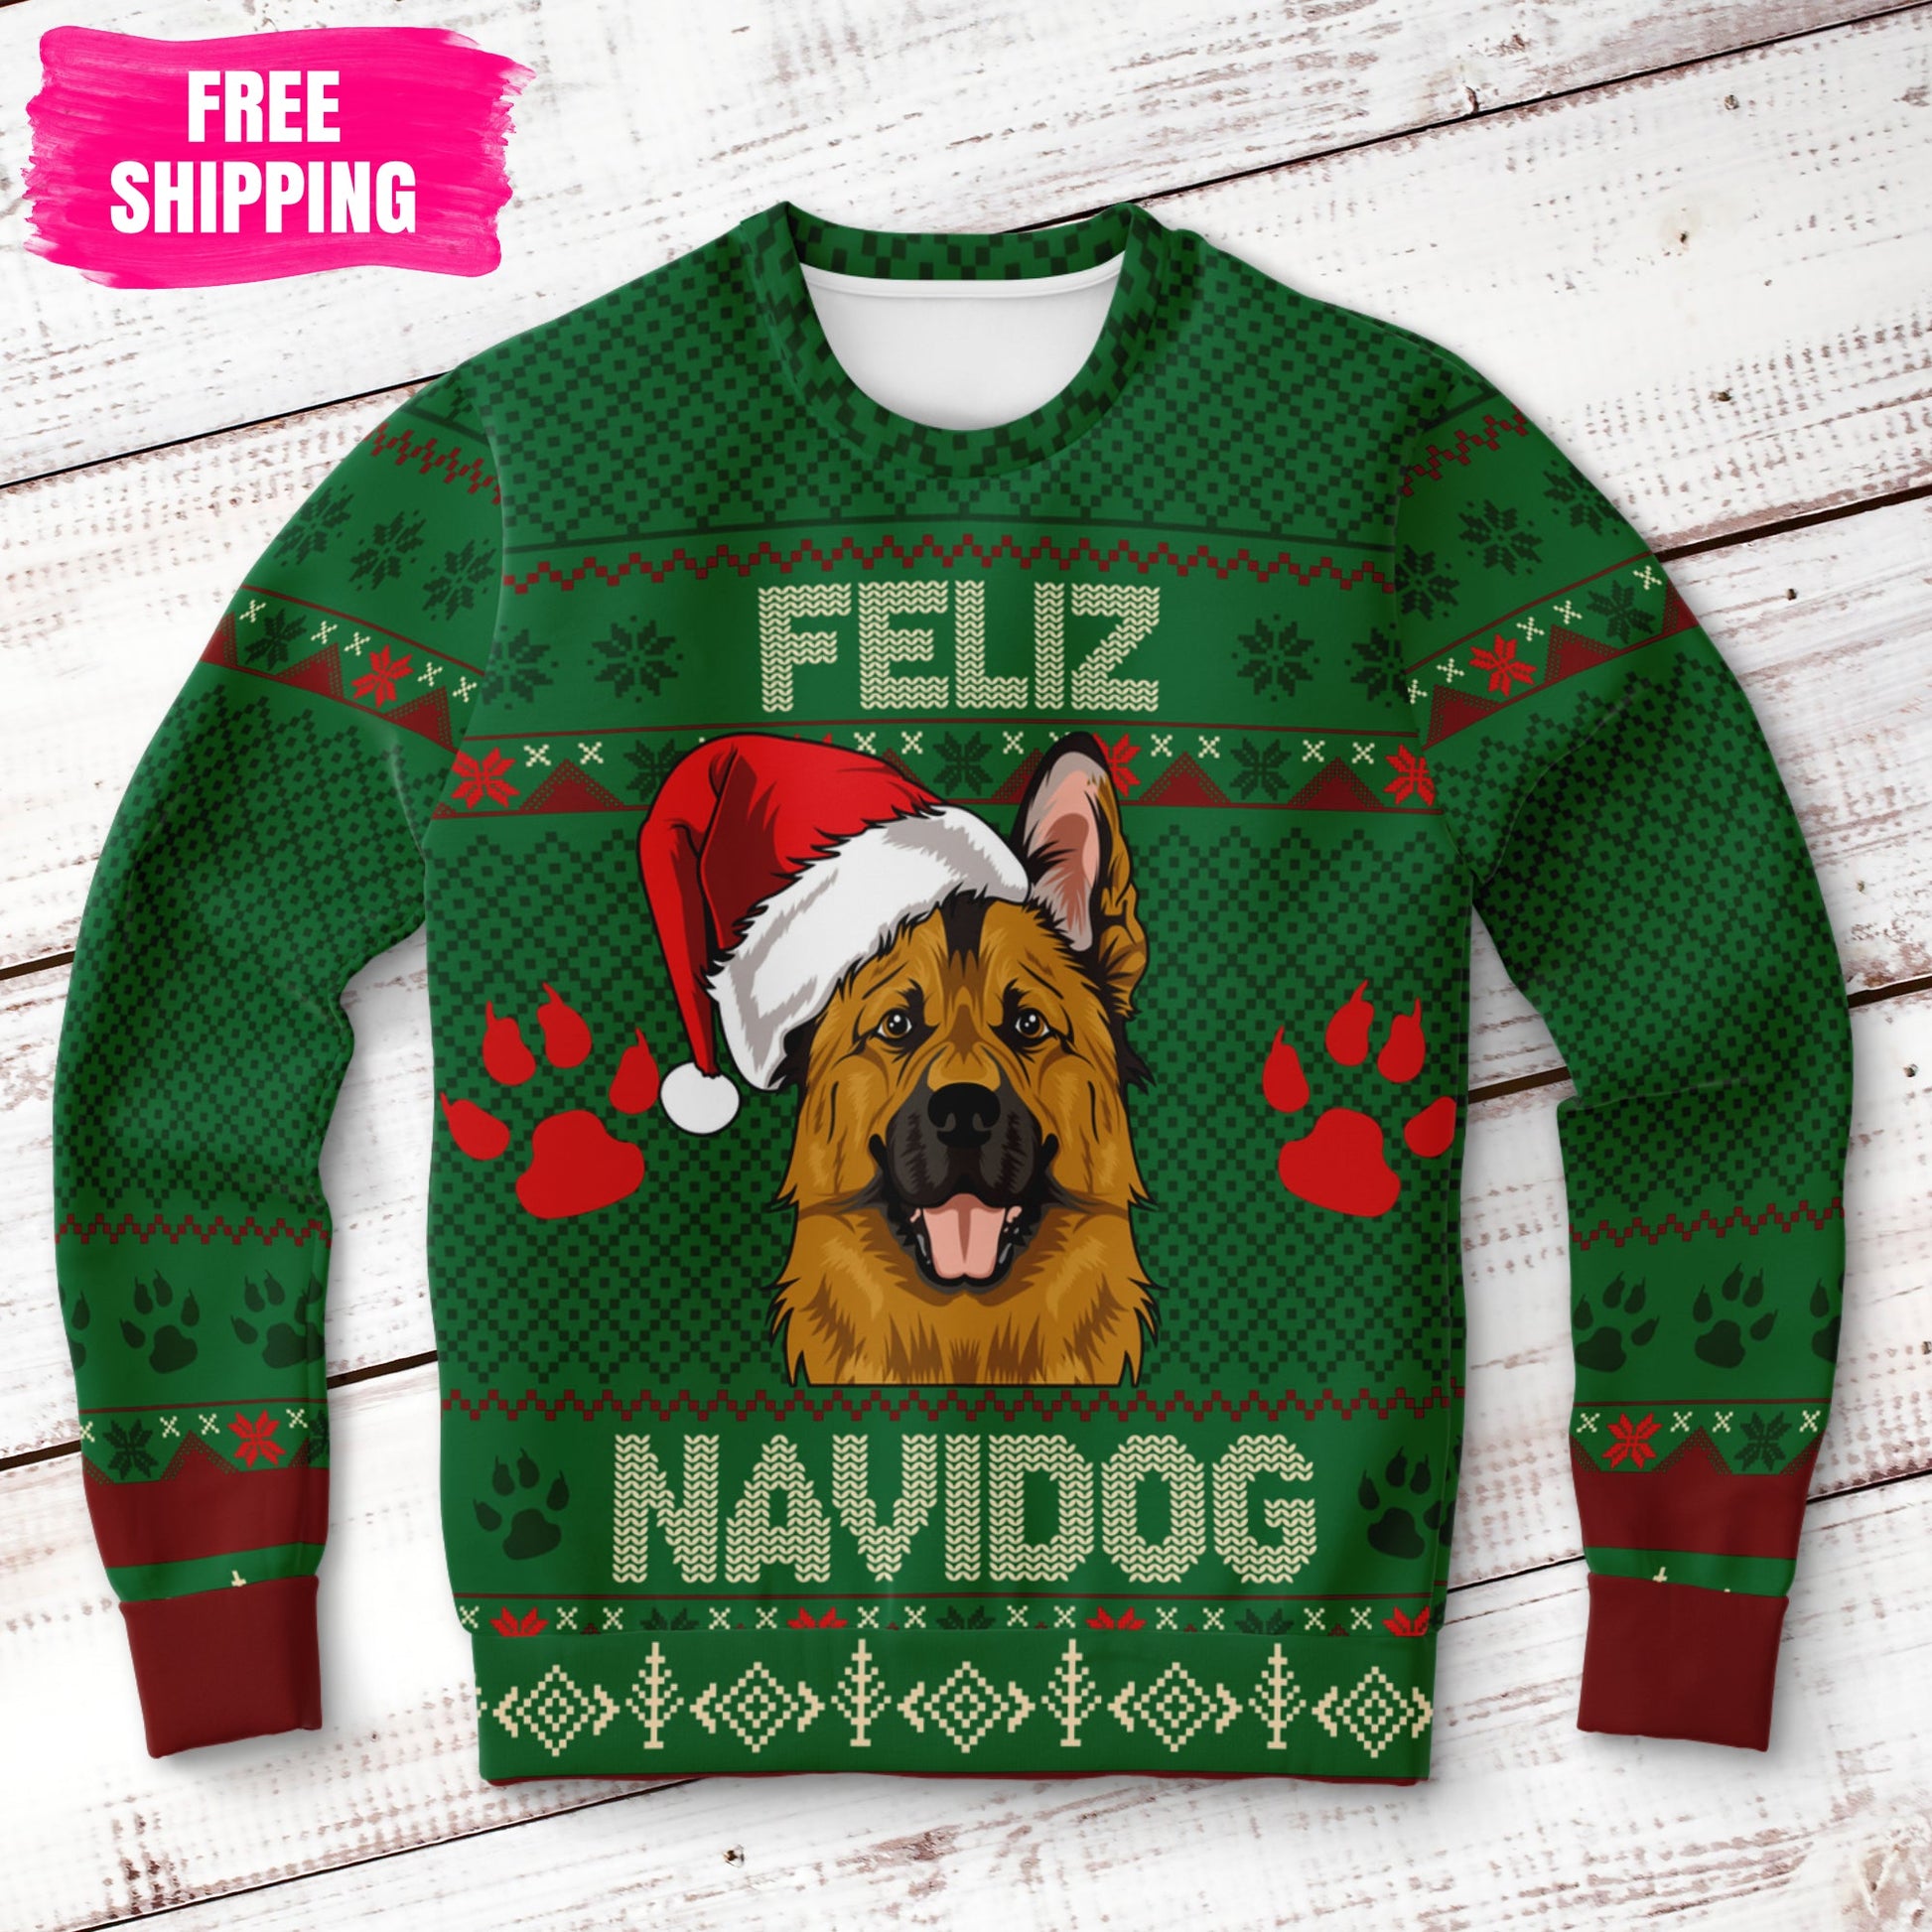 Feliz Navidog German Shepherd Ugly Christmas Sweatshirt Fashion Sweatshirt - AOP Subliminator 